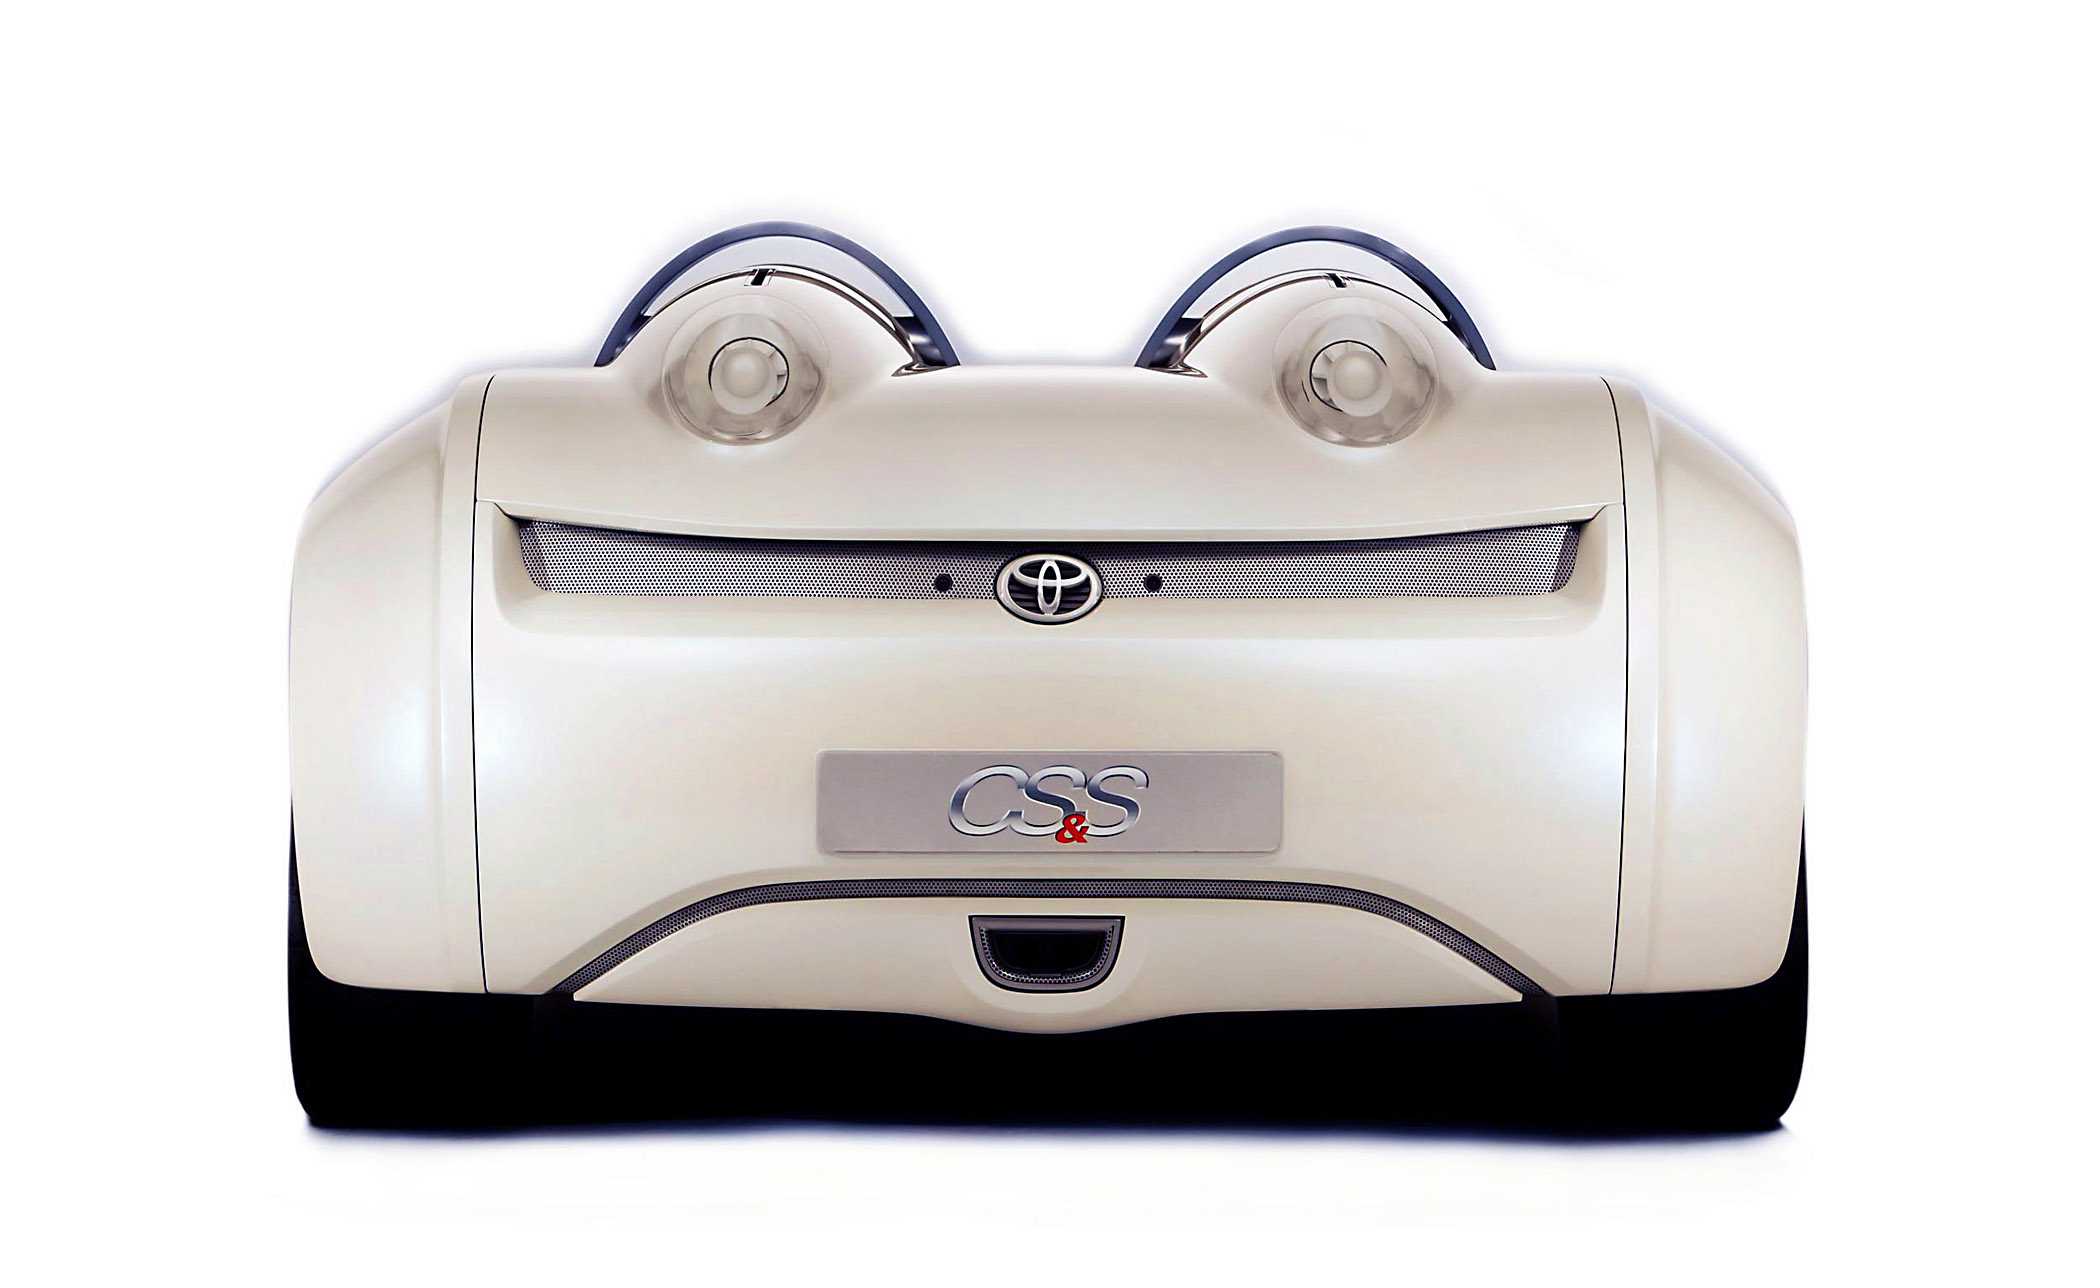 Toyota Concept CS+S